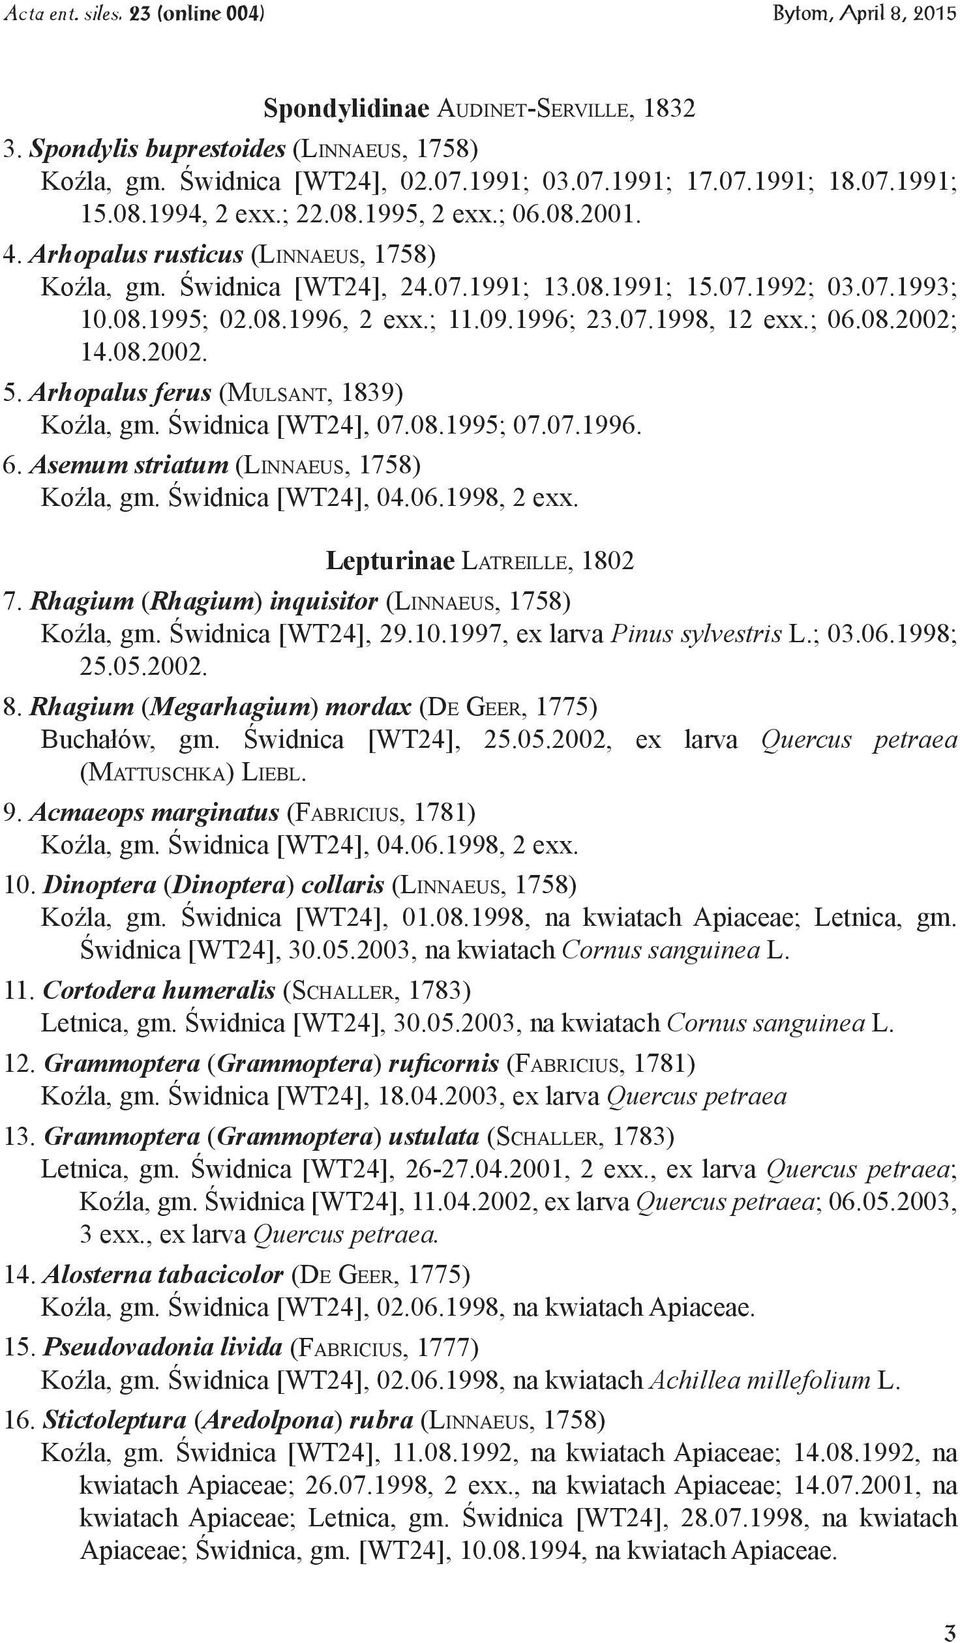 08.2002. 5. Arhopalus ferus (Mulsant, 1839) Koźla, gm. Świdnica [WT24], 07.08.1995; 07.07.1996. 6. Asemum striatum (Linnaeus, 1758) Koźla, gm. Świdnica [WT24], 04.06.1998, 2 exx.